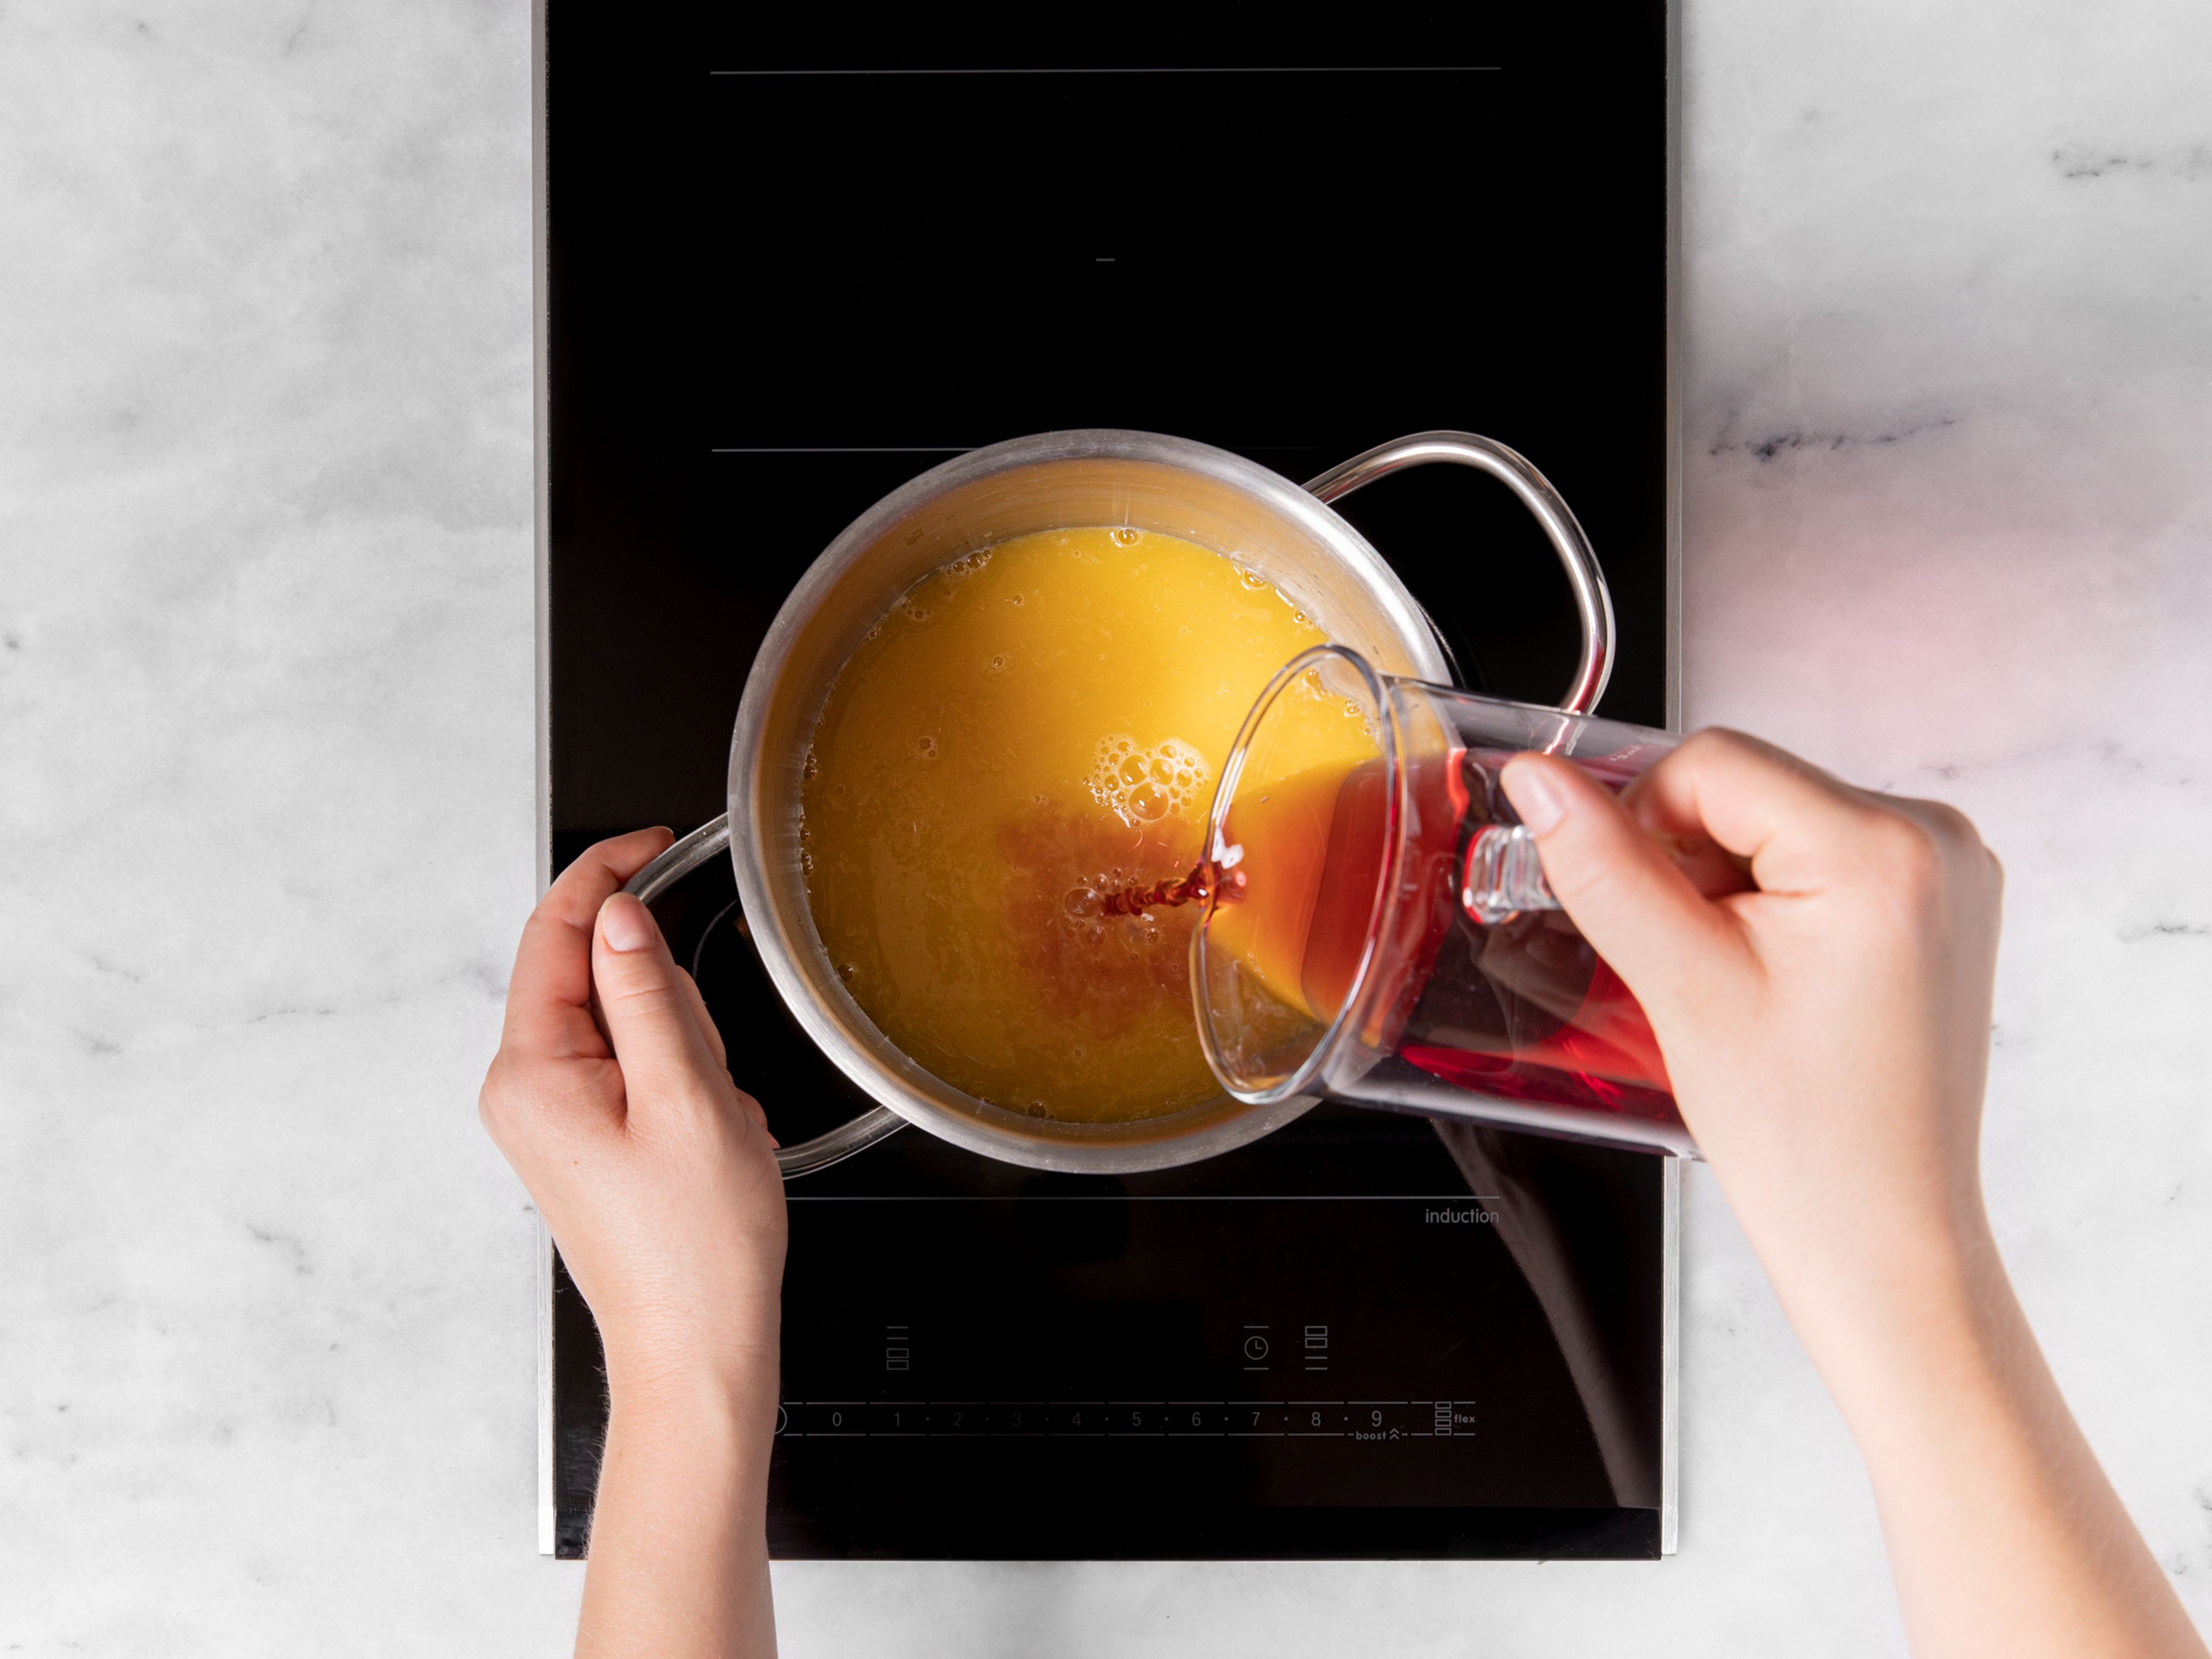 Erhitze in einem Topf Cranberrysaft und Orangensaft bei mittlerer Hitze. Sobald er erwärmt ist, gib ihn in die Teekanne oder die Isolierflasche. Warm genießen!